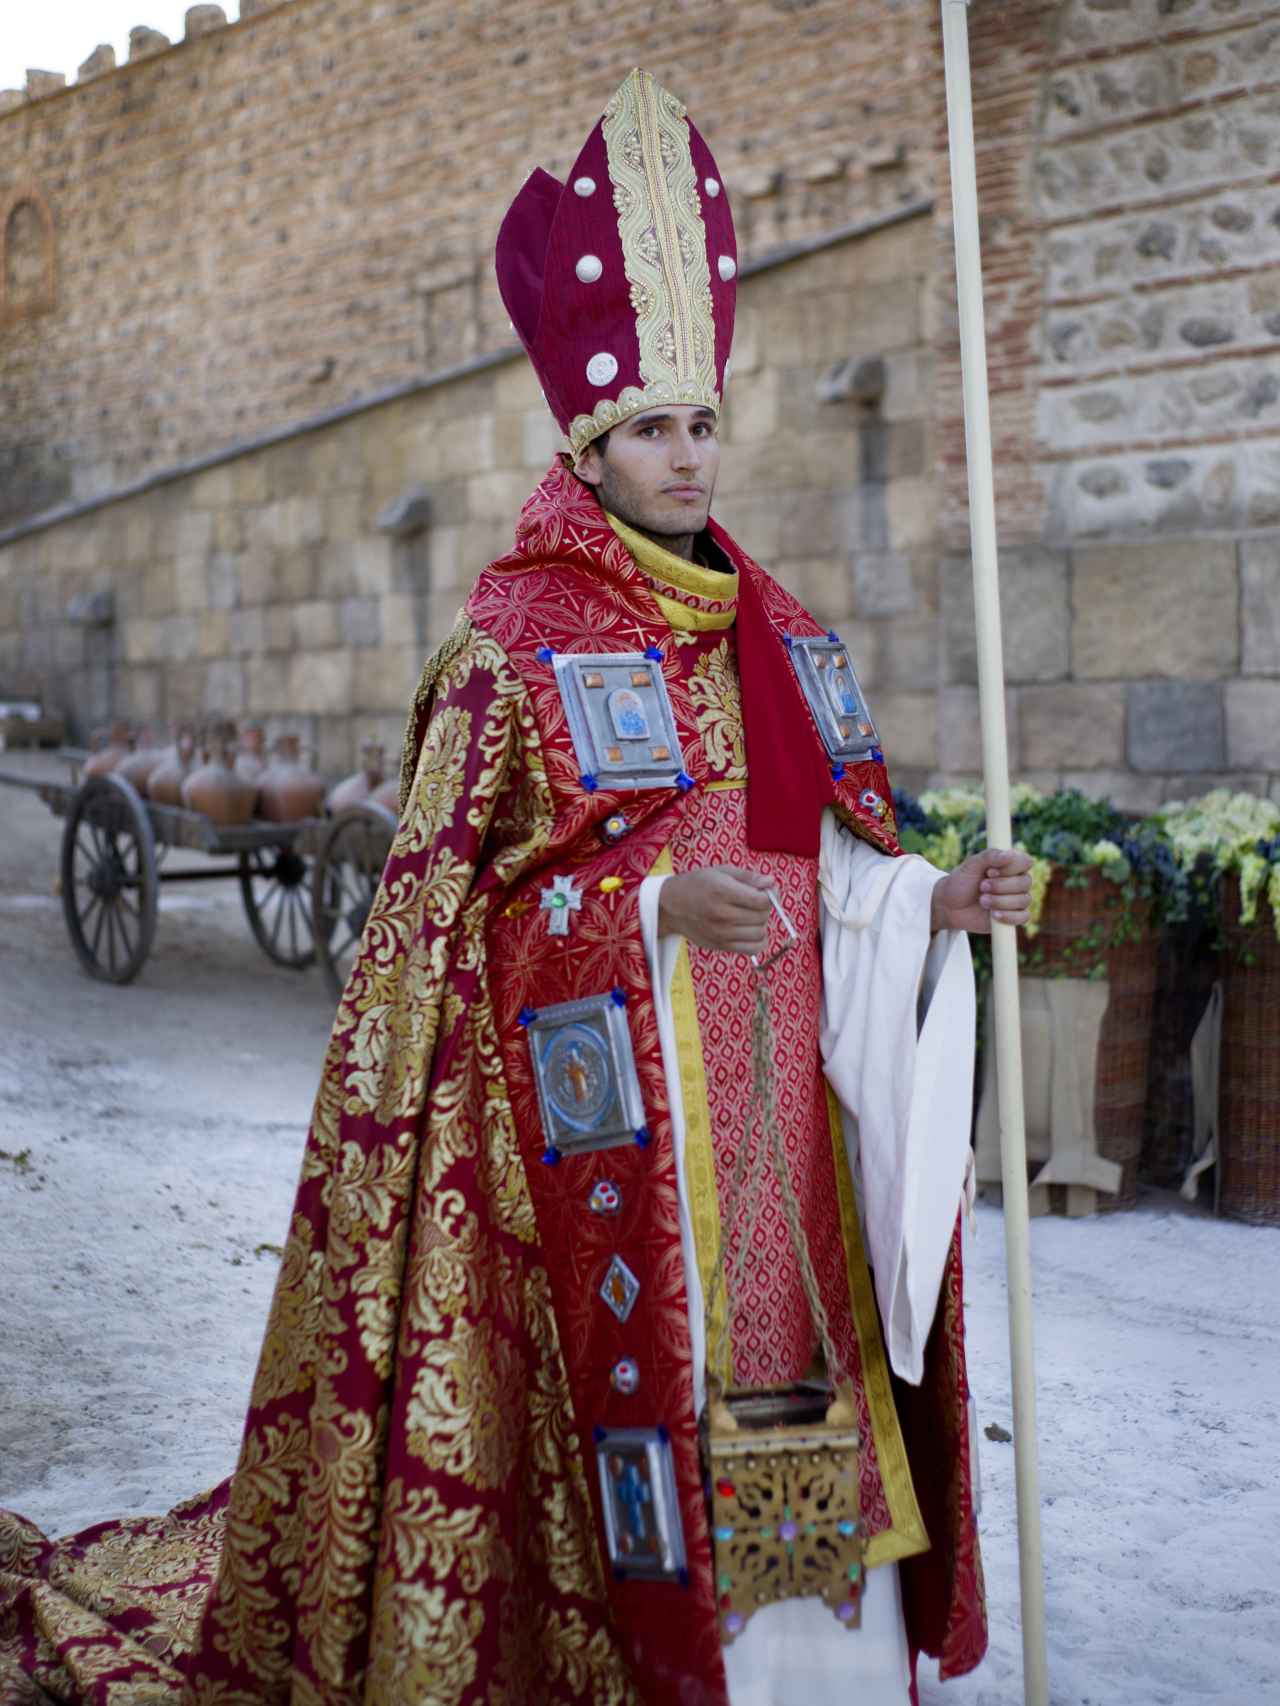 Uno de los actores de Puy du Fou con el traje de obispo.